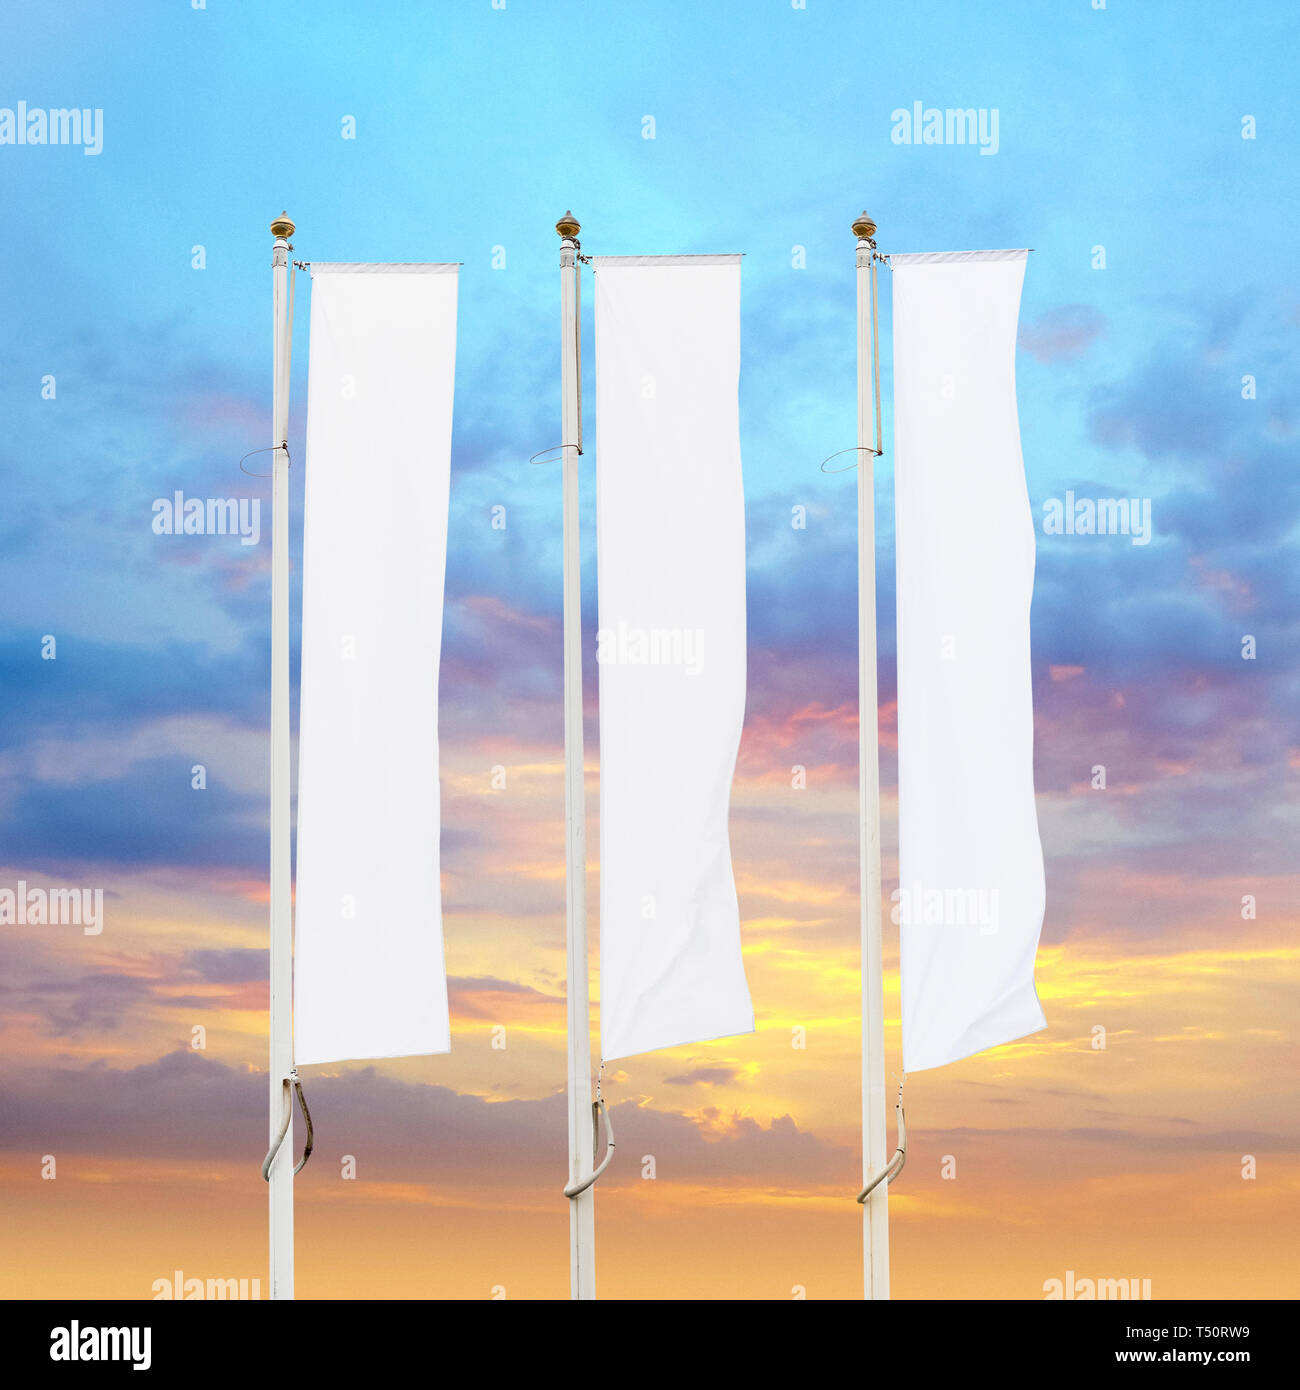 Drei leere weiße corporate Fahnen Fahnenmasten mit Sonnenuntergang Himmel Hintergrund, Corporate Flagge Mockup zu Ad-Logo, Text oder Symbol, Firma Identität Flagge Stockfoto